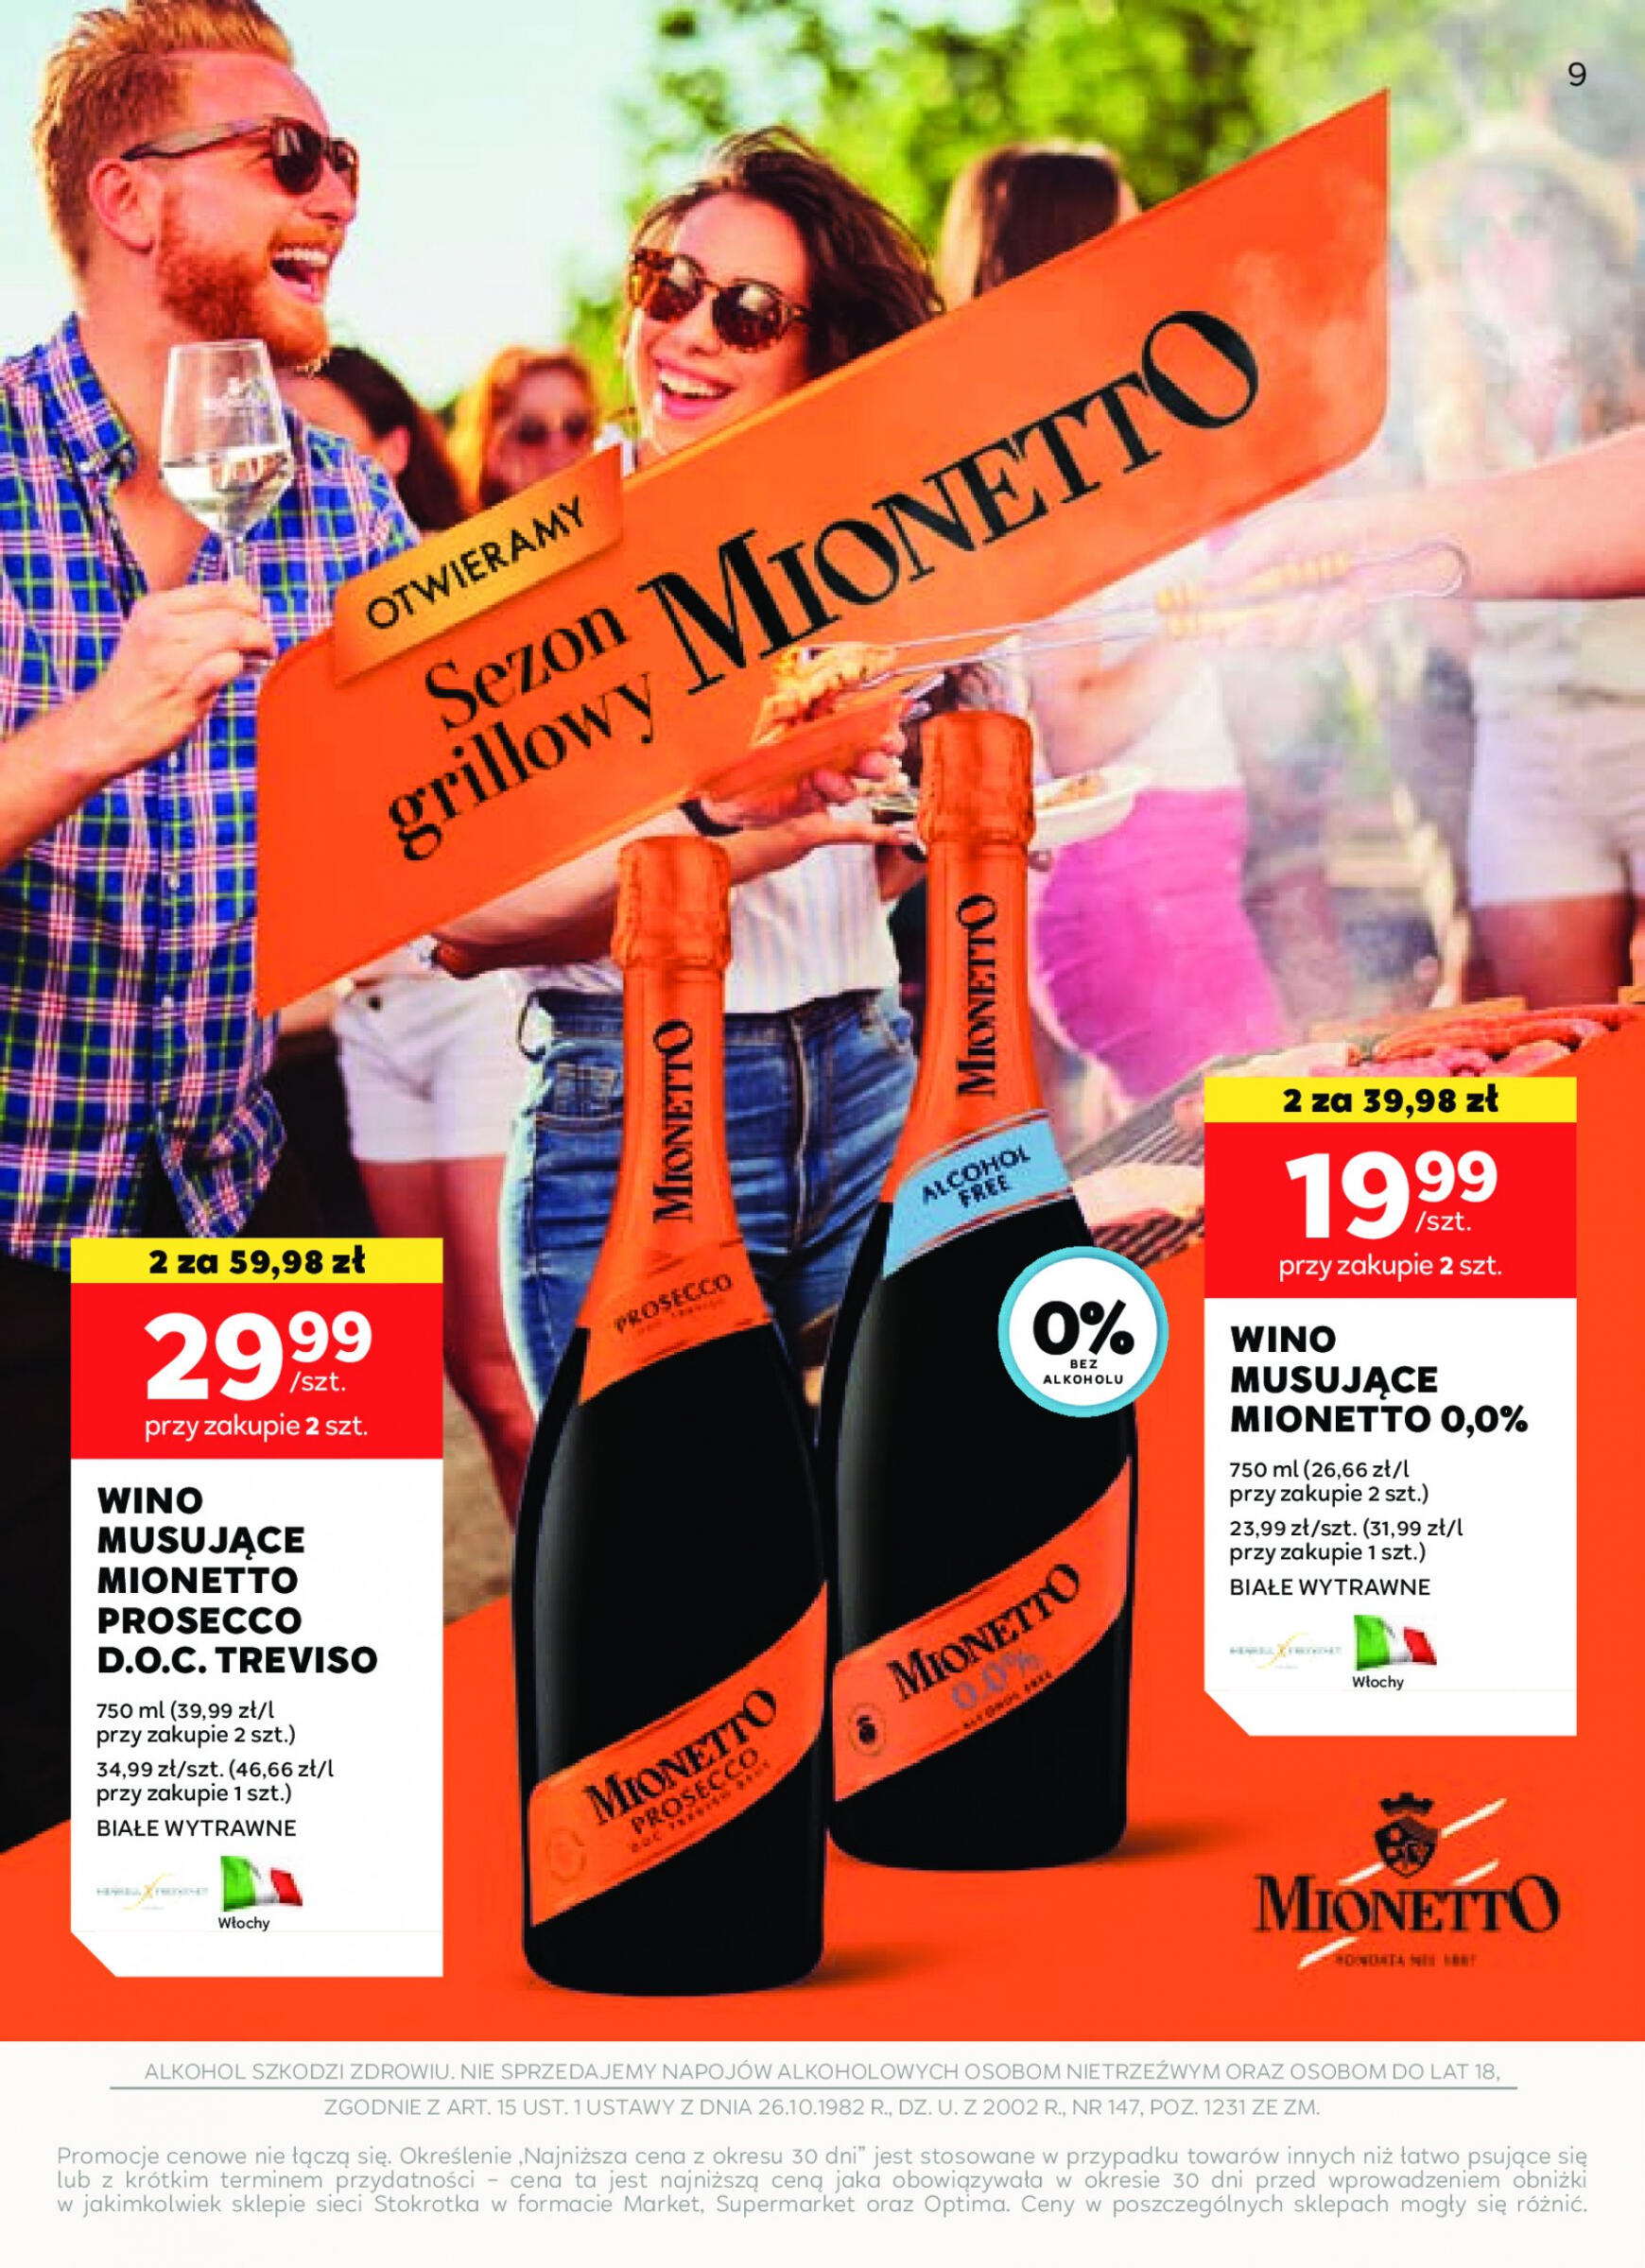 stokrotka - Stokrotka Supermarket - Oferta alkoholowa gazetka aktualna ważna od 25.04. - 22.05. - page: 9